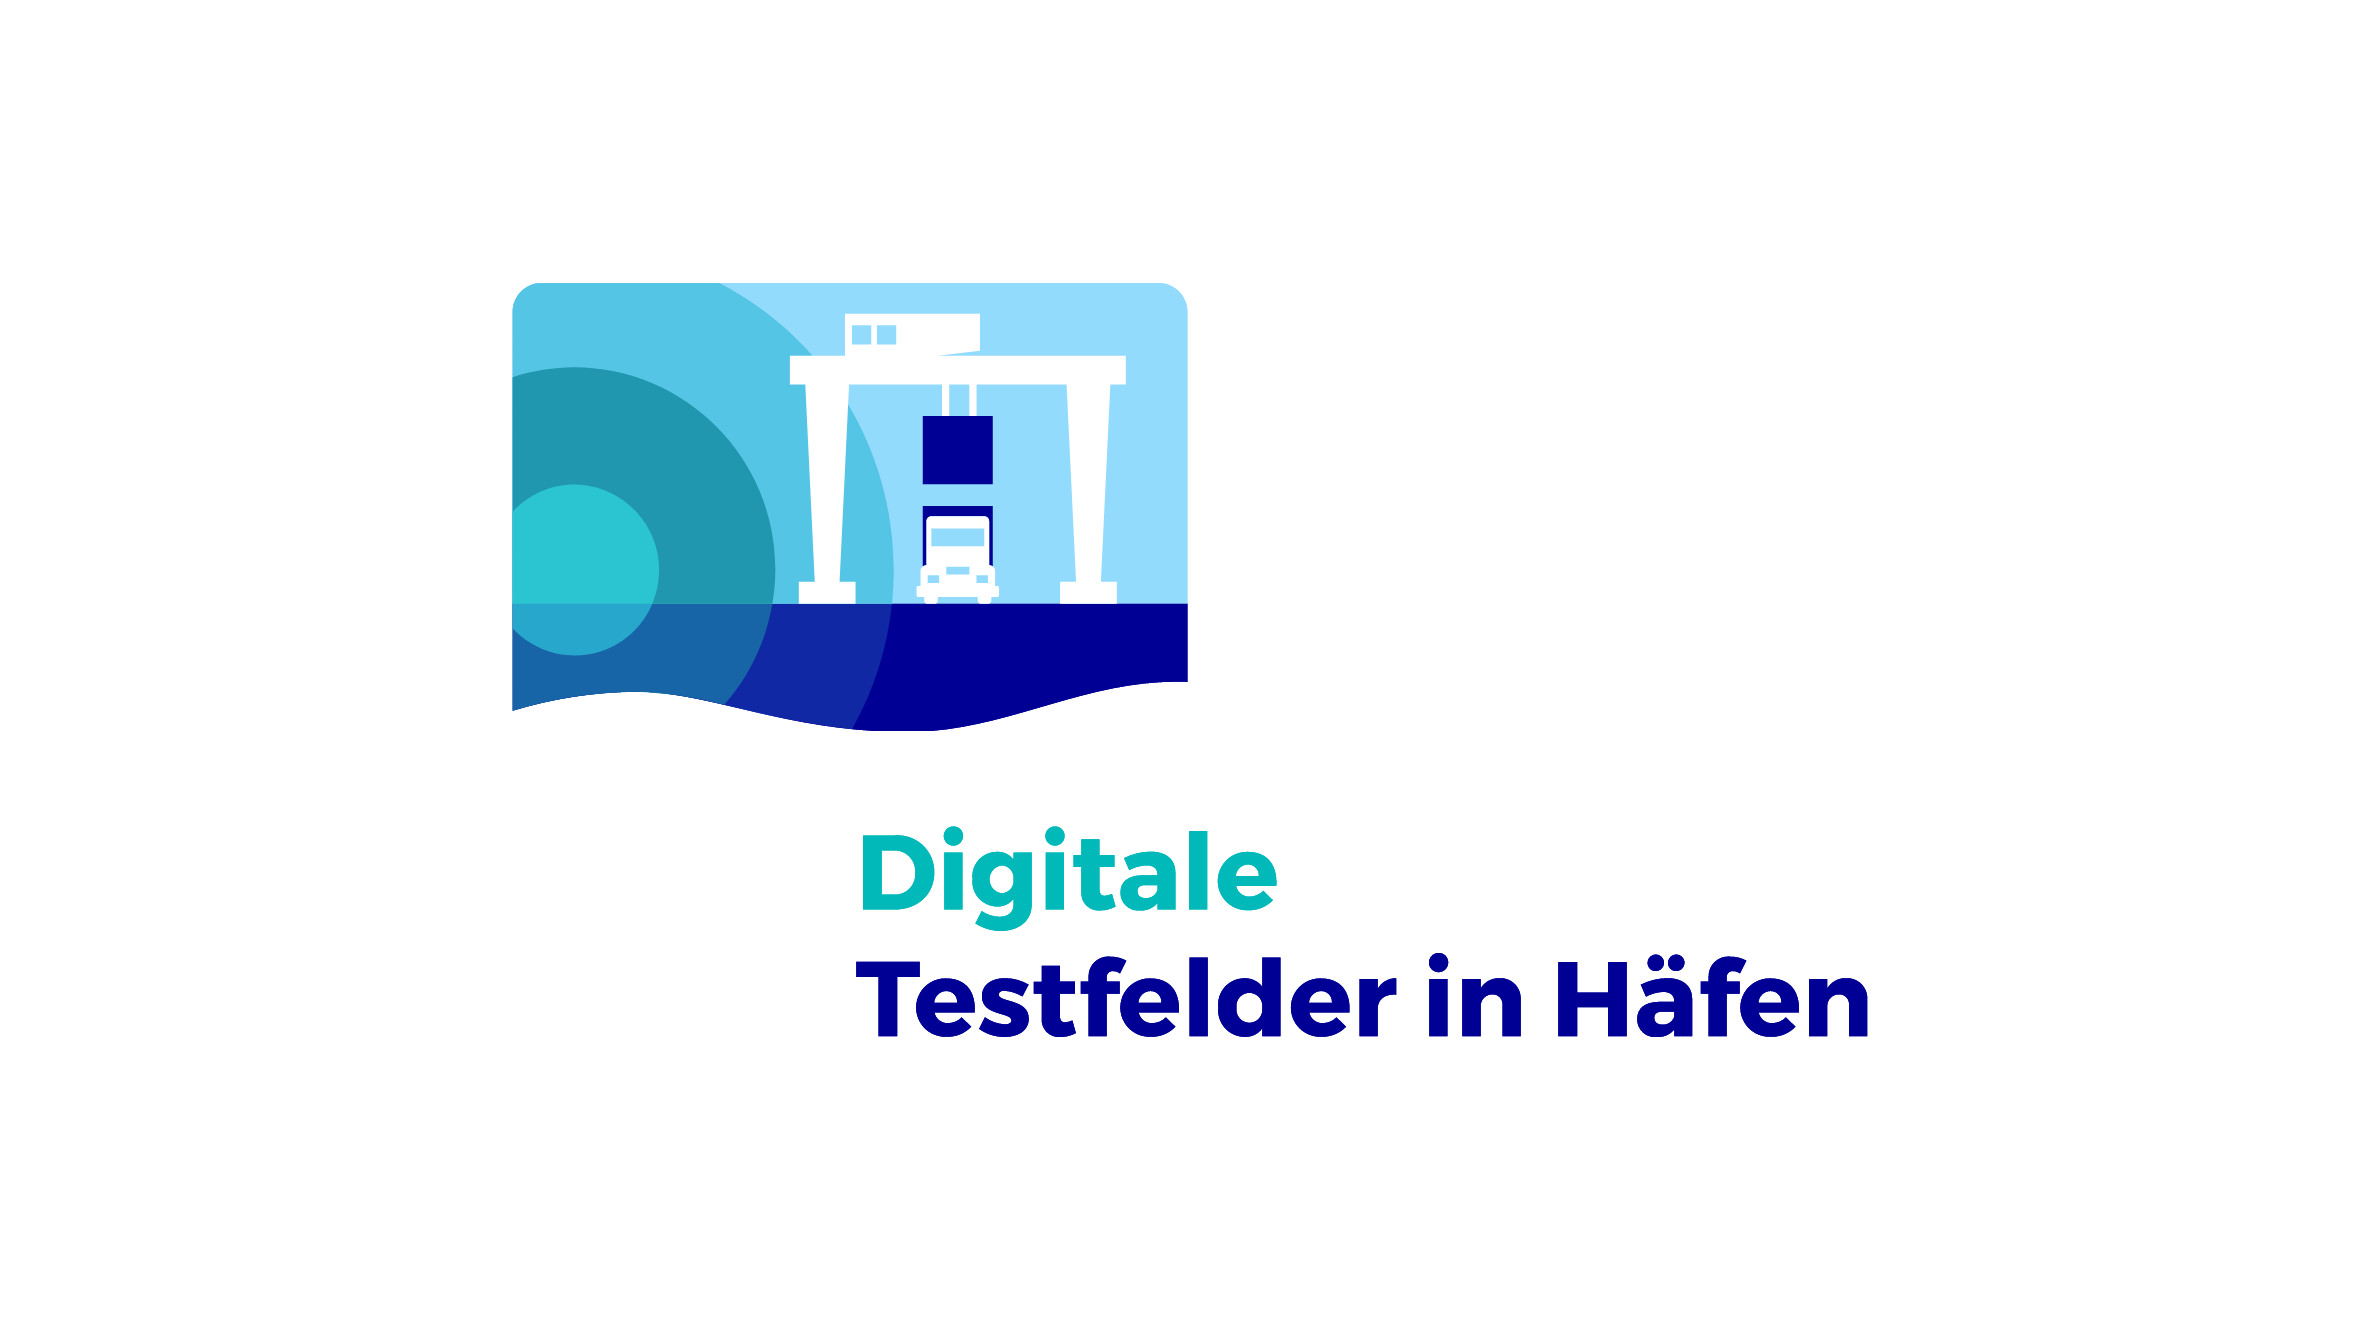 TÜV Rheinland Digitale Testfelder in Häfen, Logo